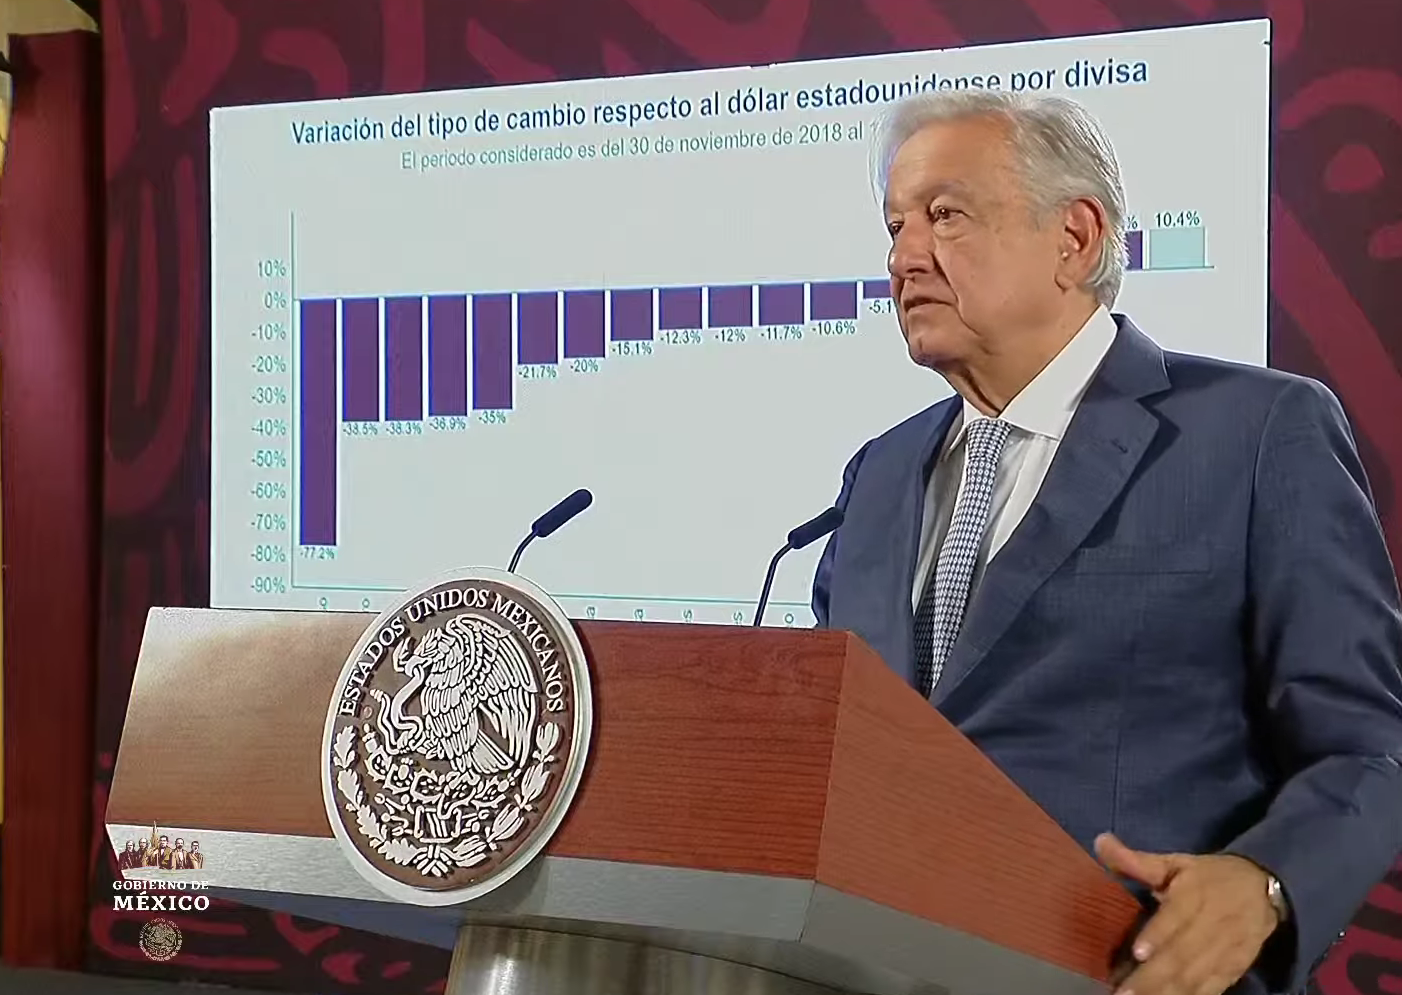 Vamos a pasar a la historia como el Gobierno que no devaluó su moneda: López Obrador